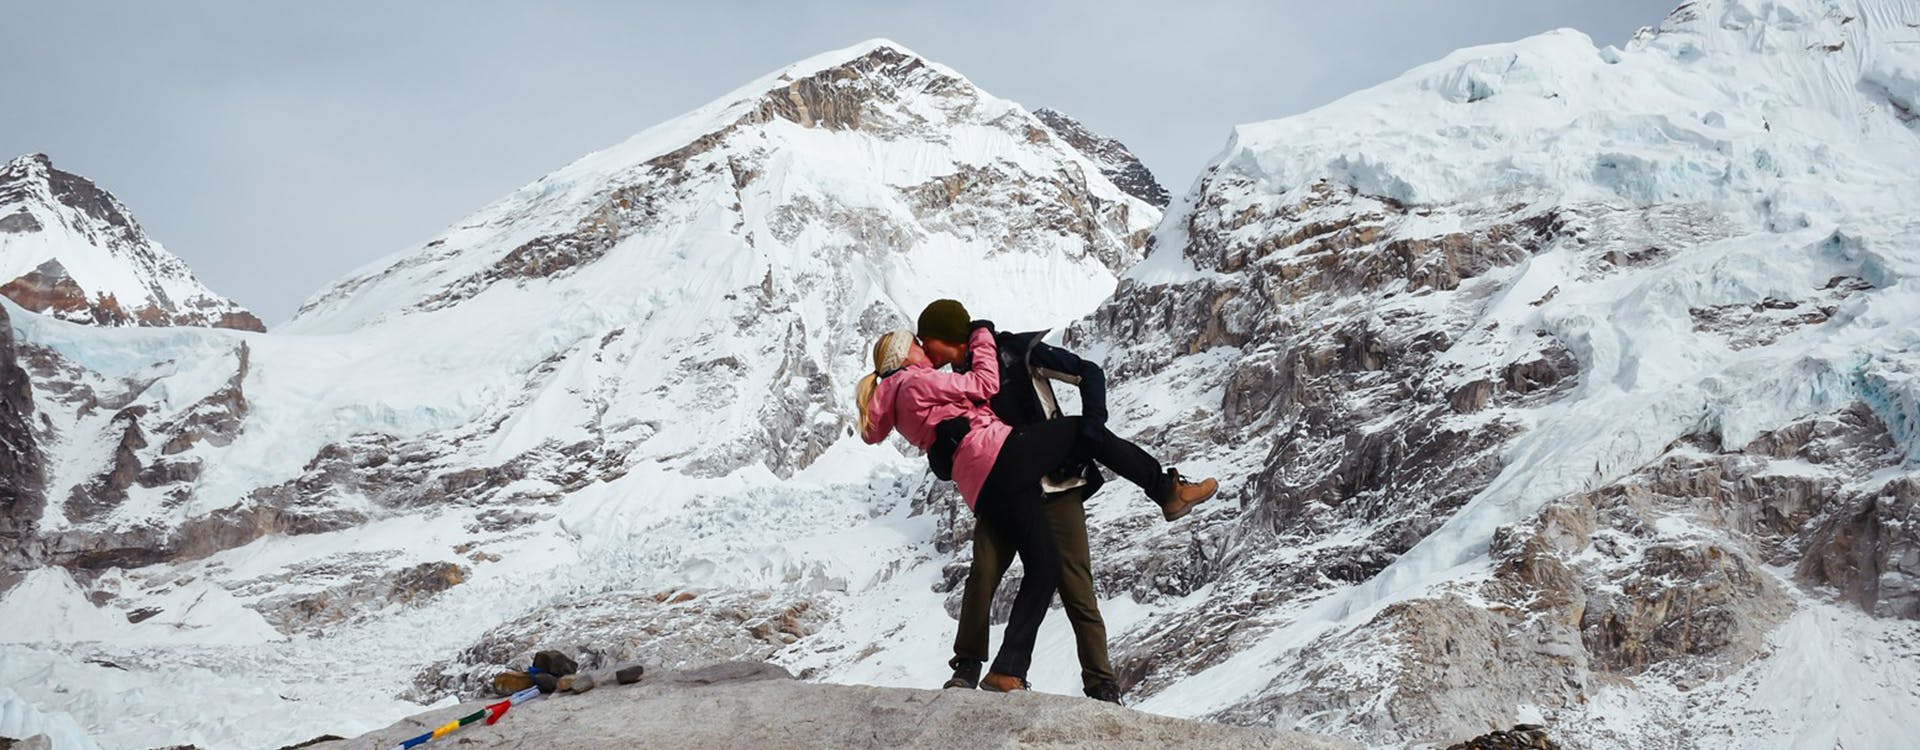 Honeymoon couple at Everest Base Camp